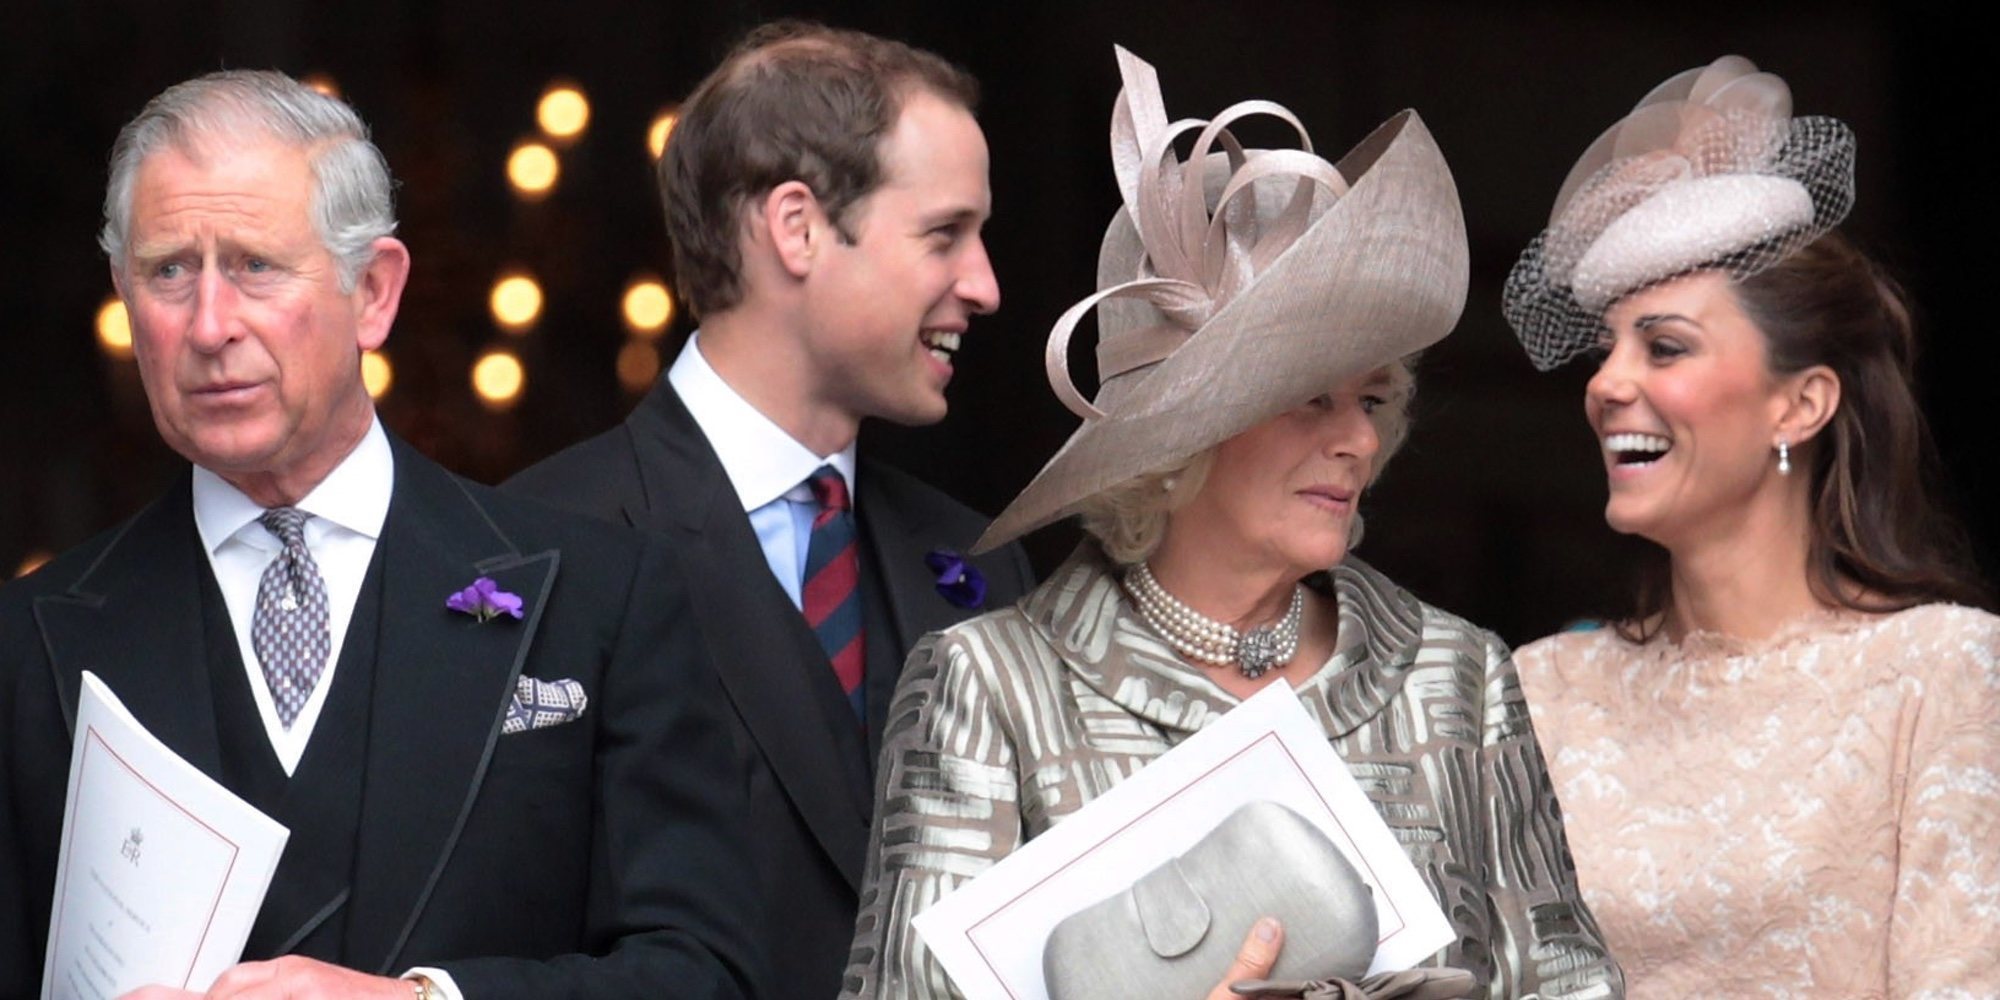 El Príncipe Carlos, entre las envidias a los Príncipes Guillermo y Harry y la rivalidad con los Middleton